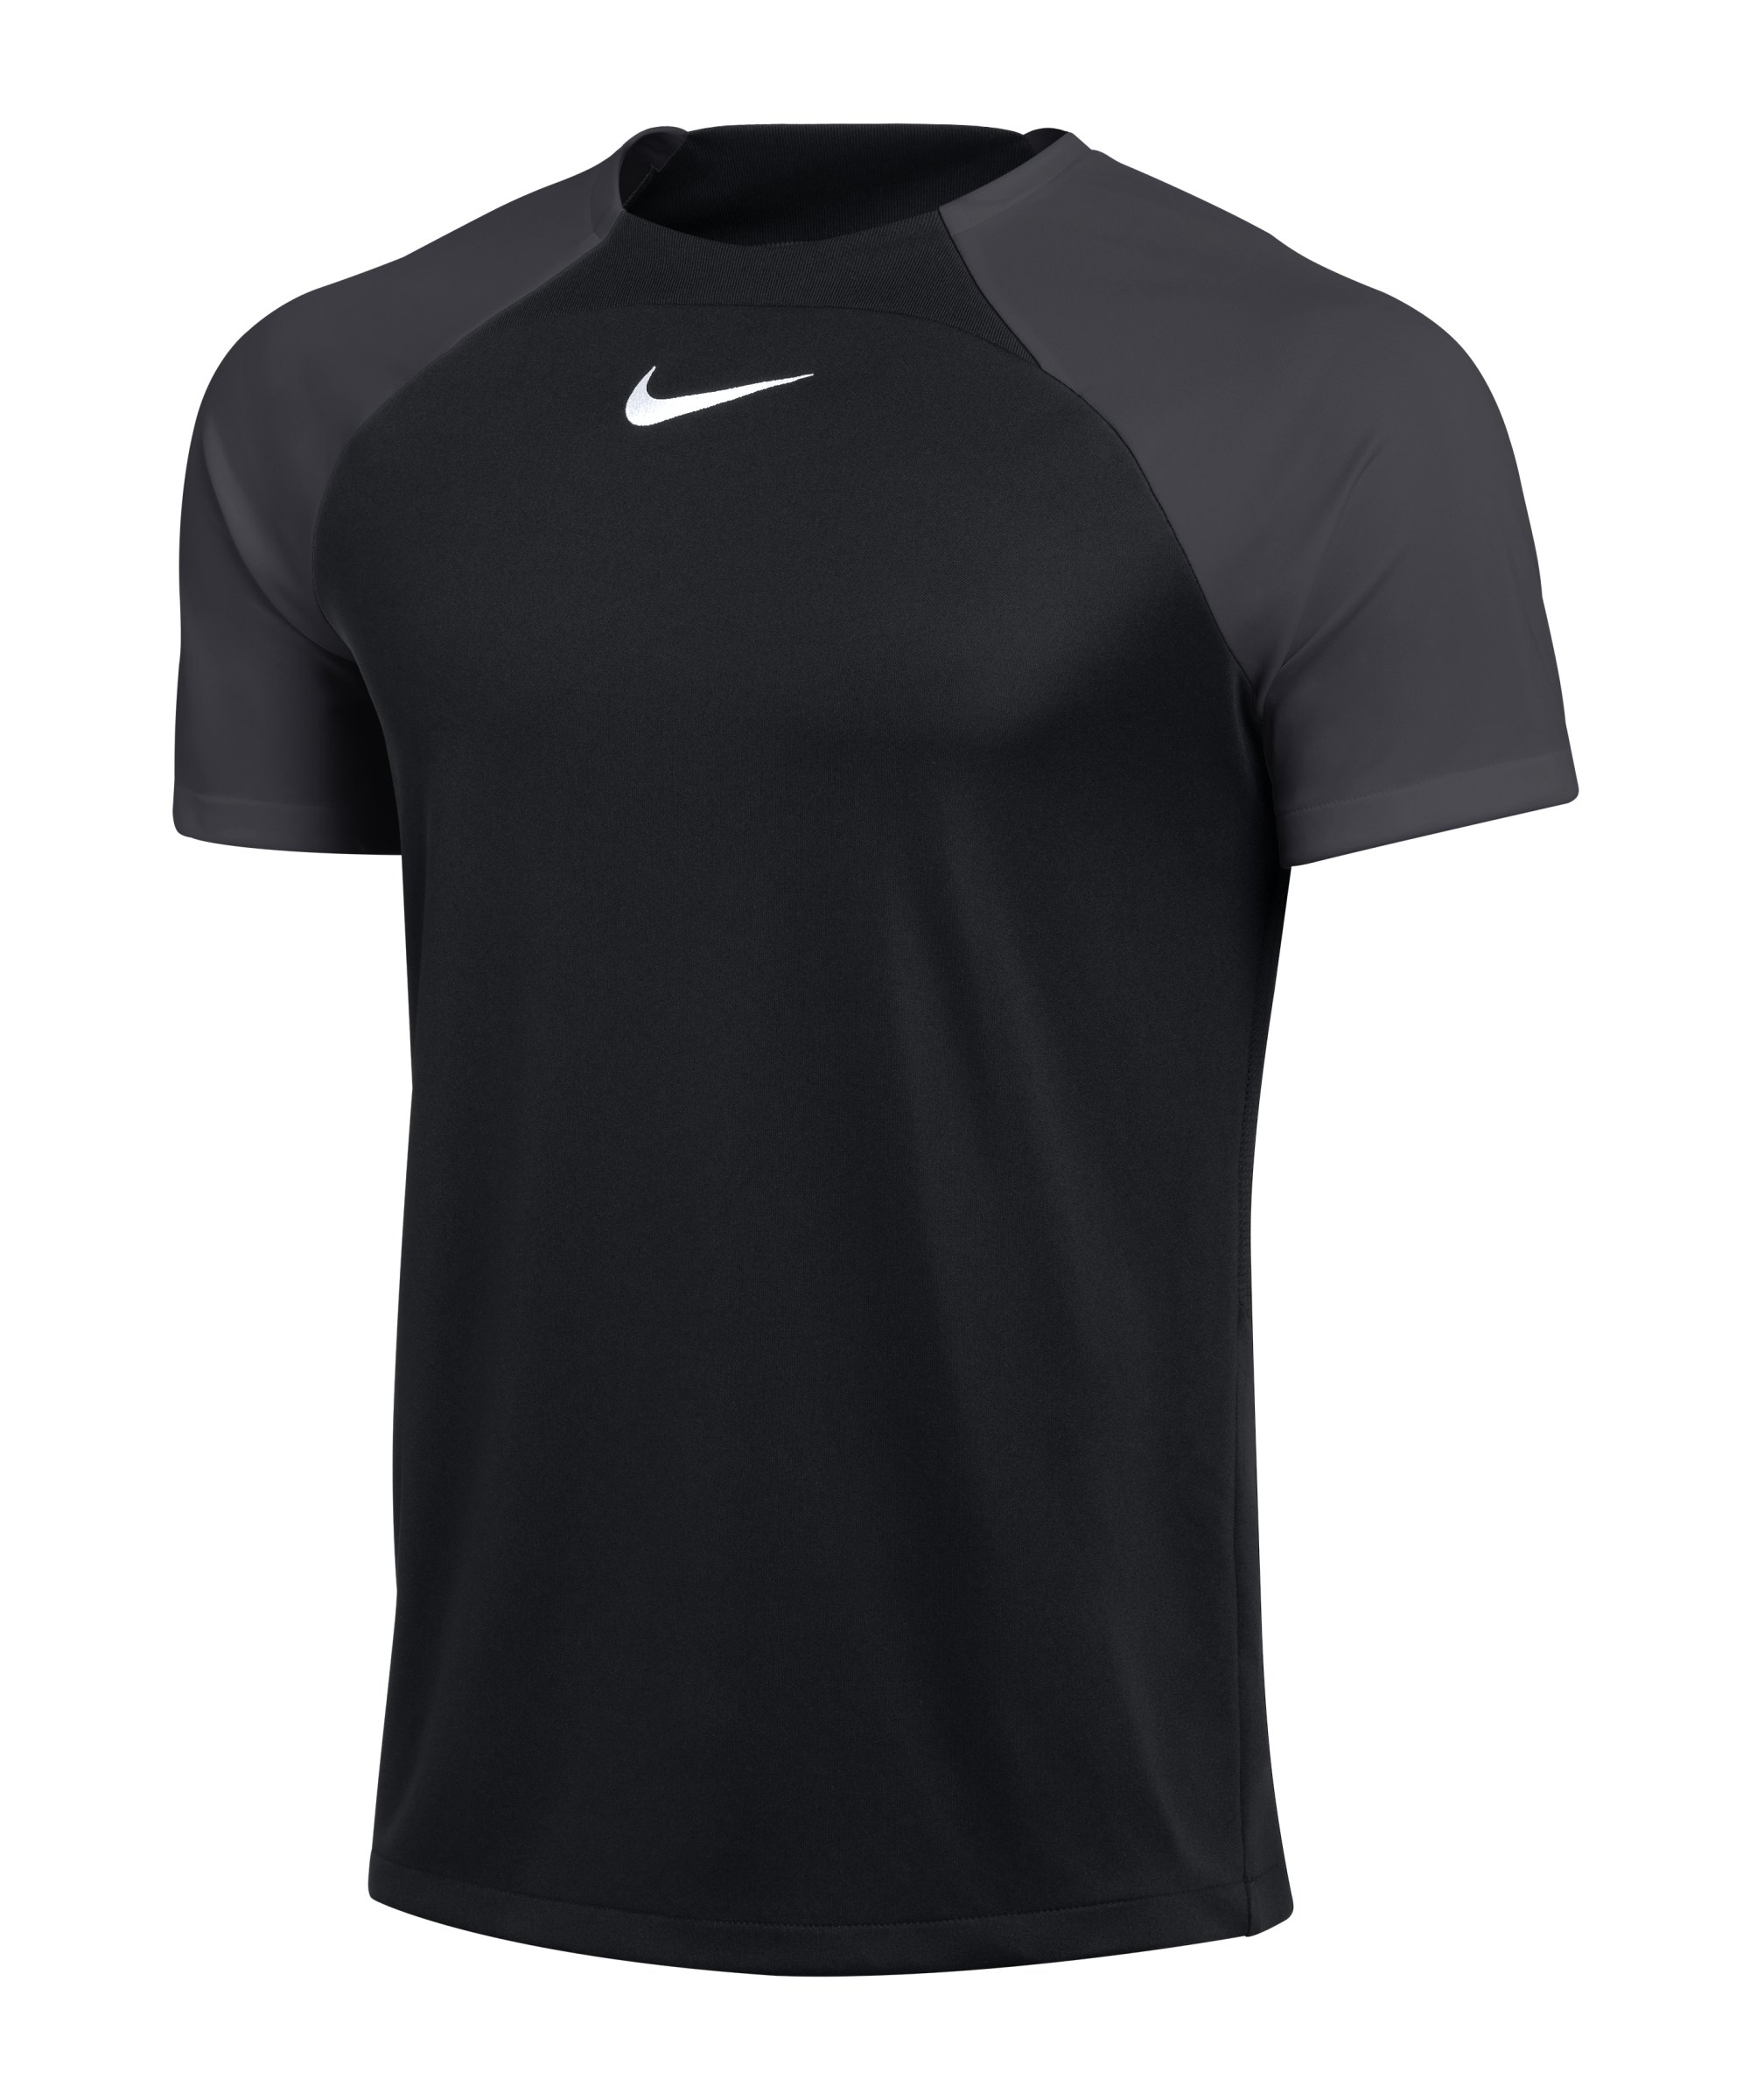 Nike Academy Pro T-Shirt Schwarz Grau F011 - schwarz